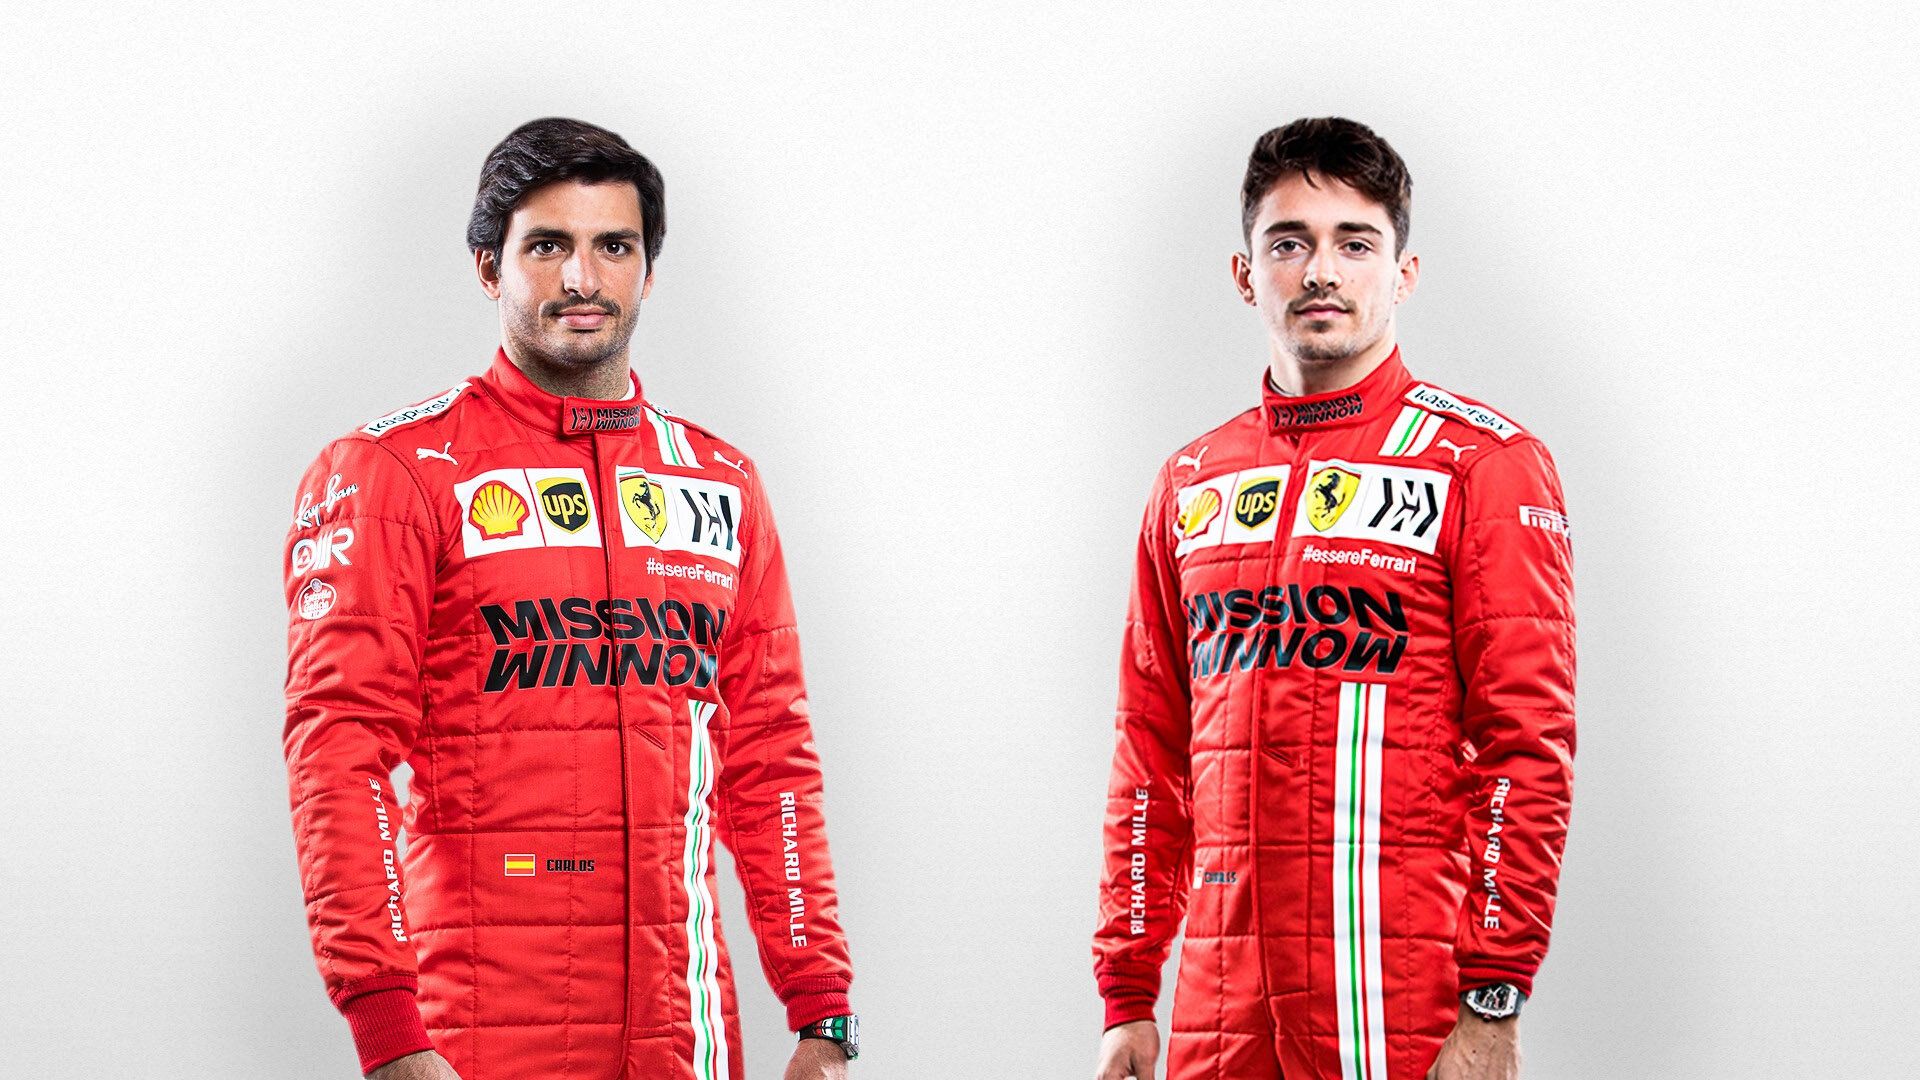 Nová dvojice Ferrari: Carlos Sainz (vlevo) a Charles Leclerc